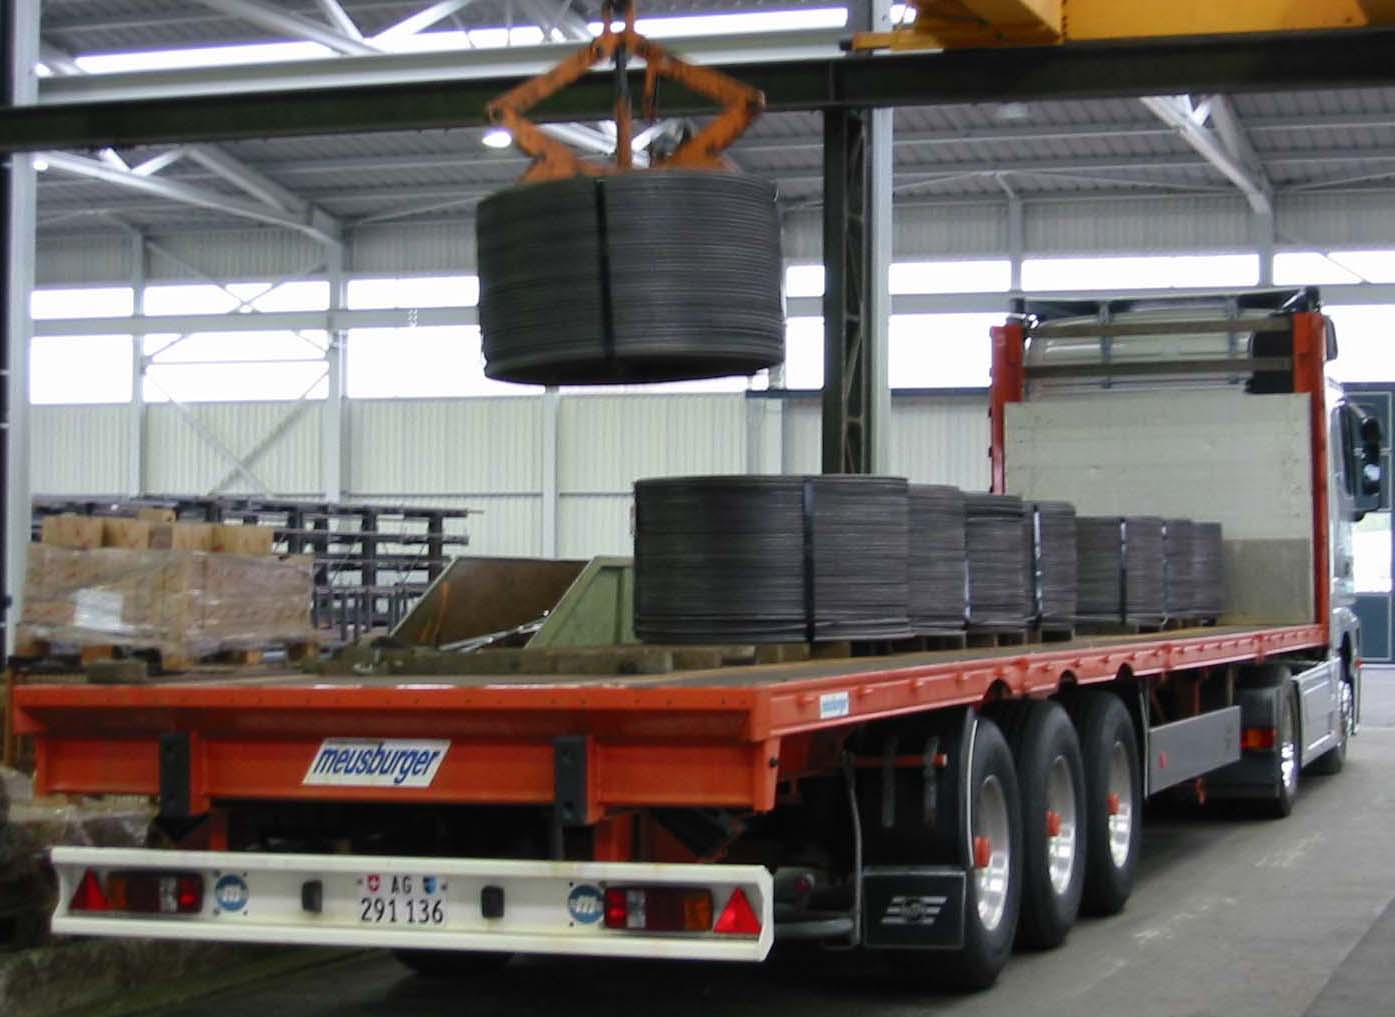 Eberle Transporte (Turgi) Spezialtransporte
Schwertransporte Logistik Transport 